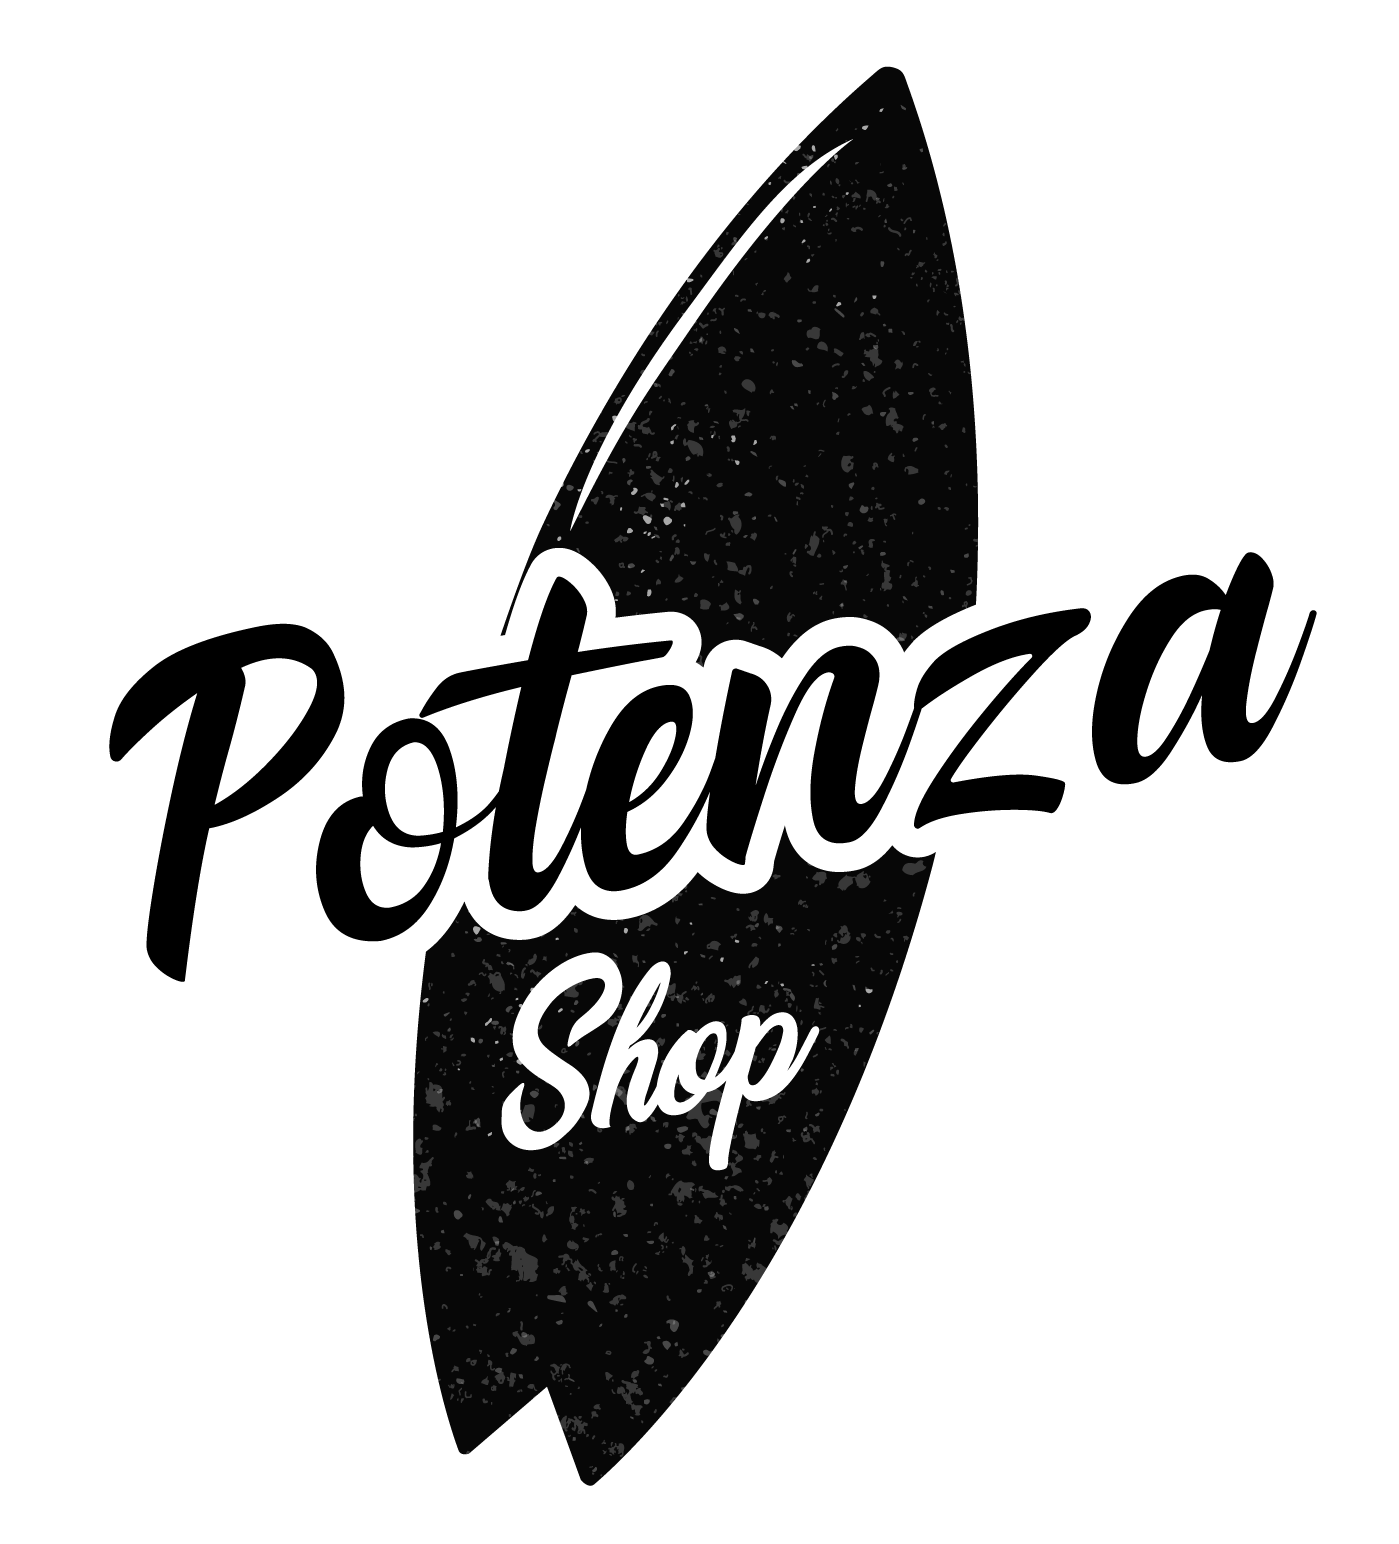 POTENZA SHOP